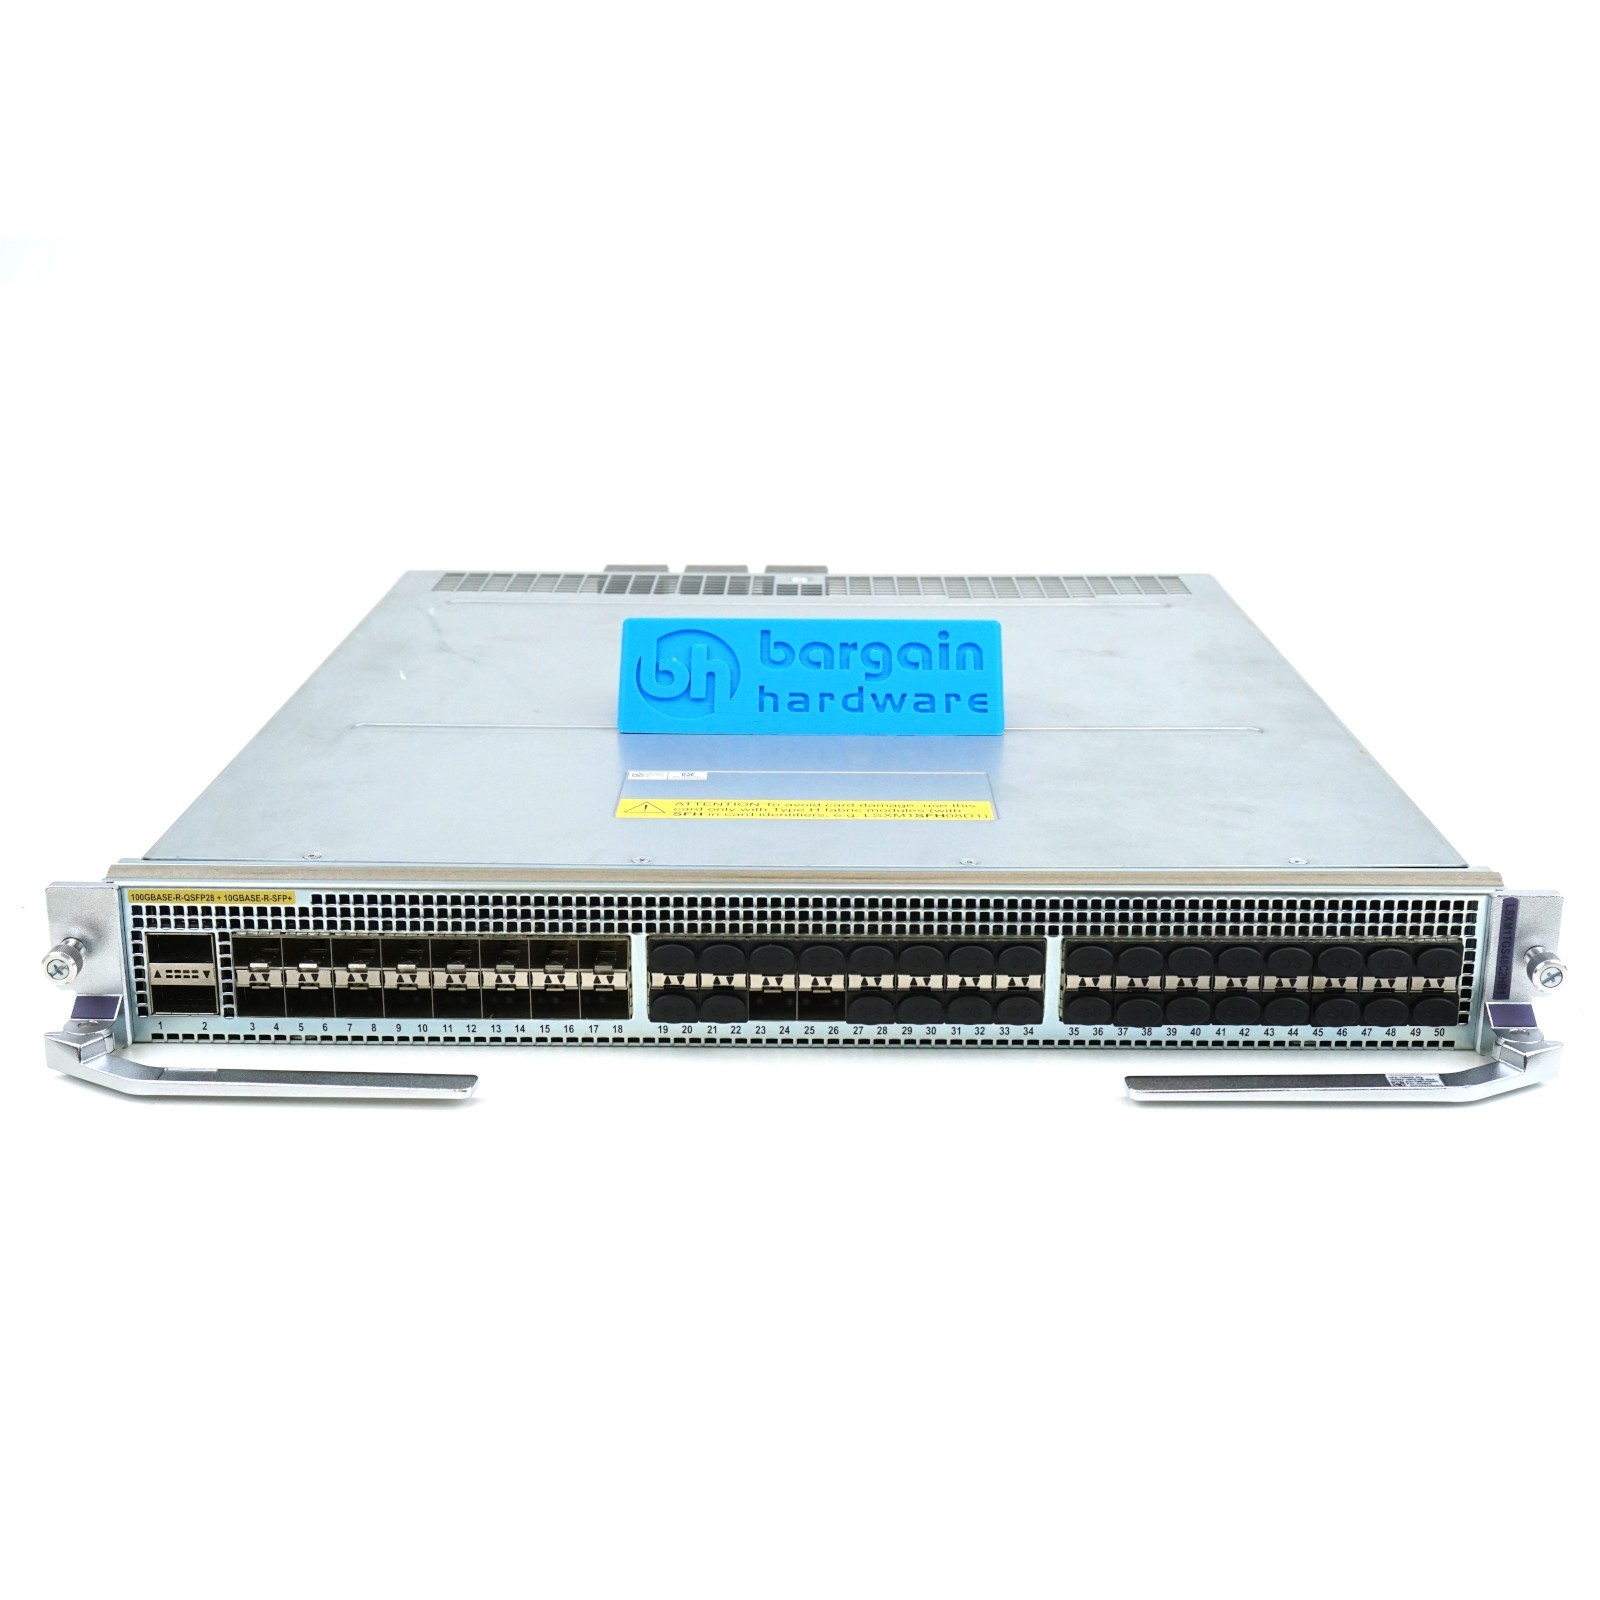 JH360A HPE FlexFabric 12900E 48-port 1/10GbE SFP+ 2-port 100GbE QSFP28 HB Module